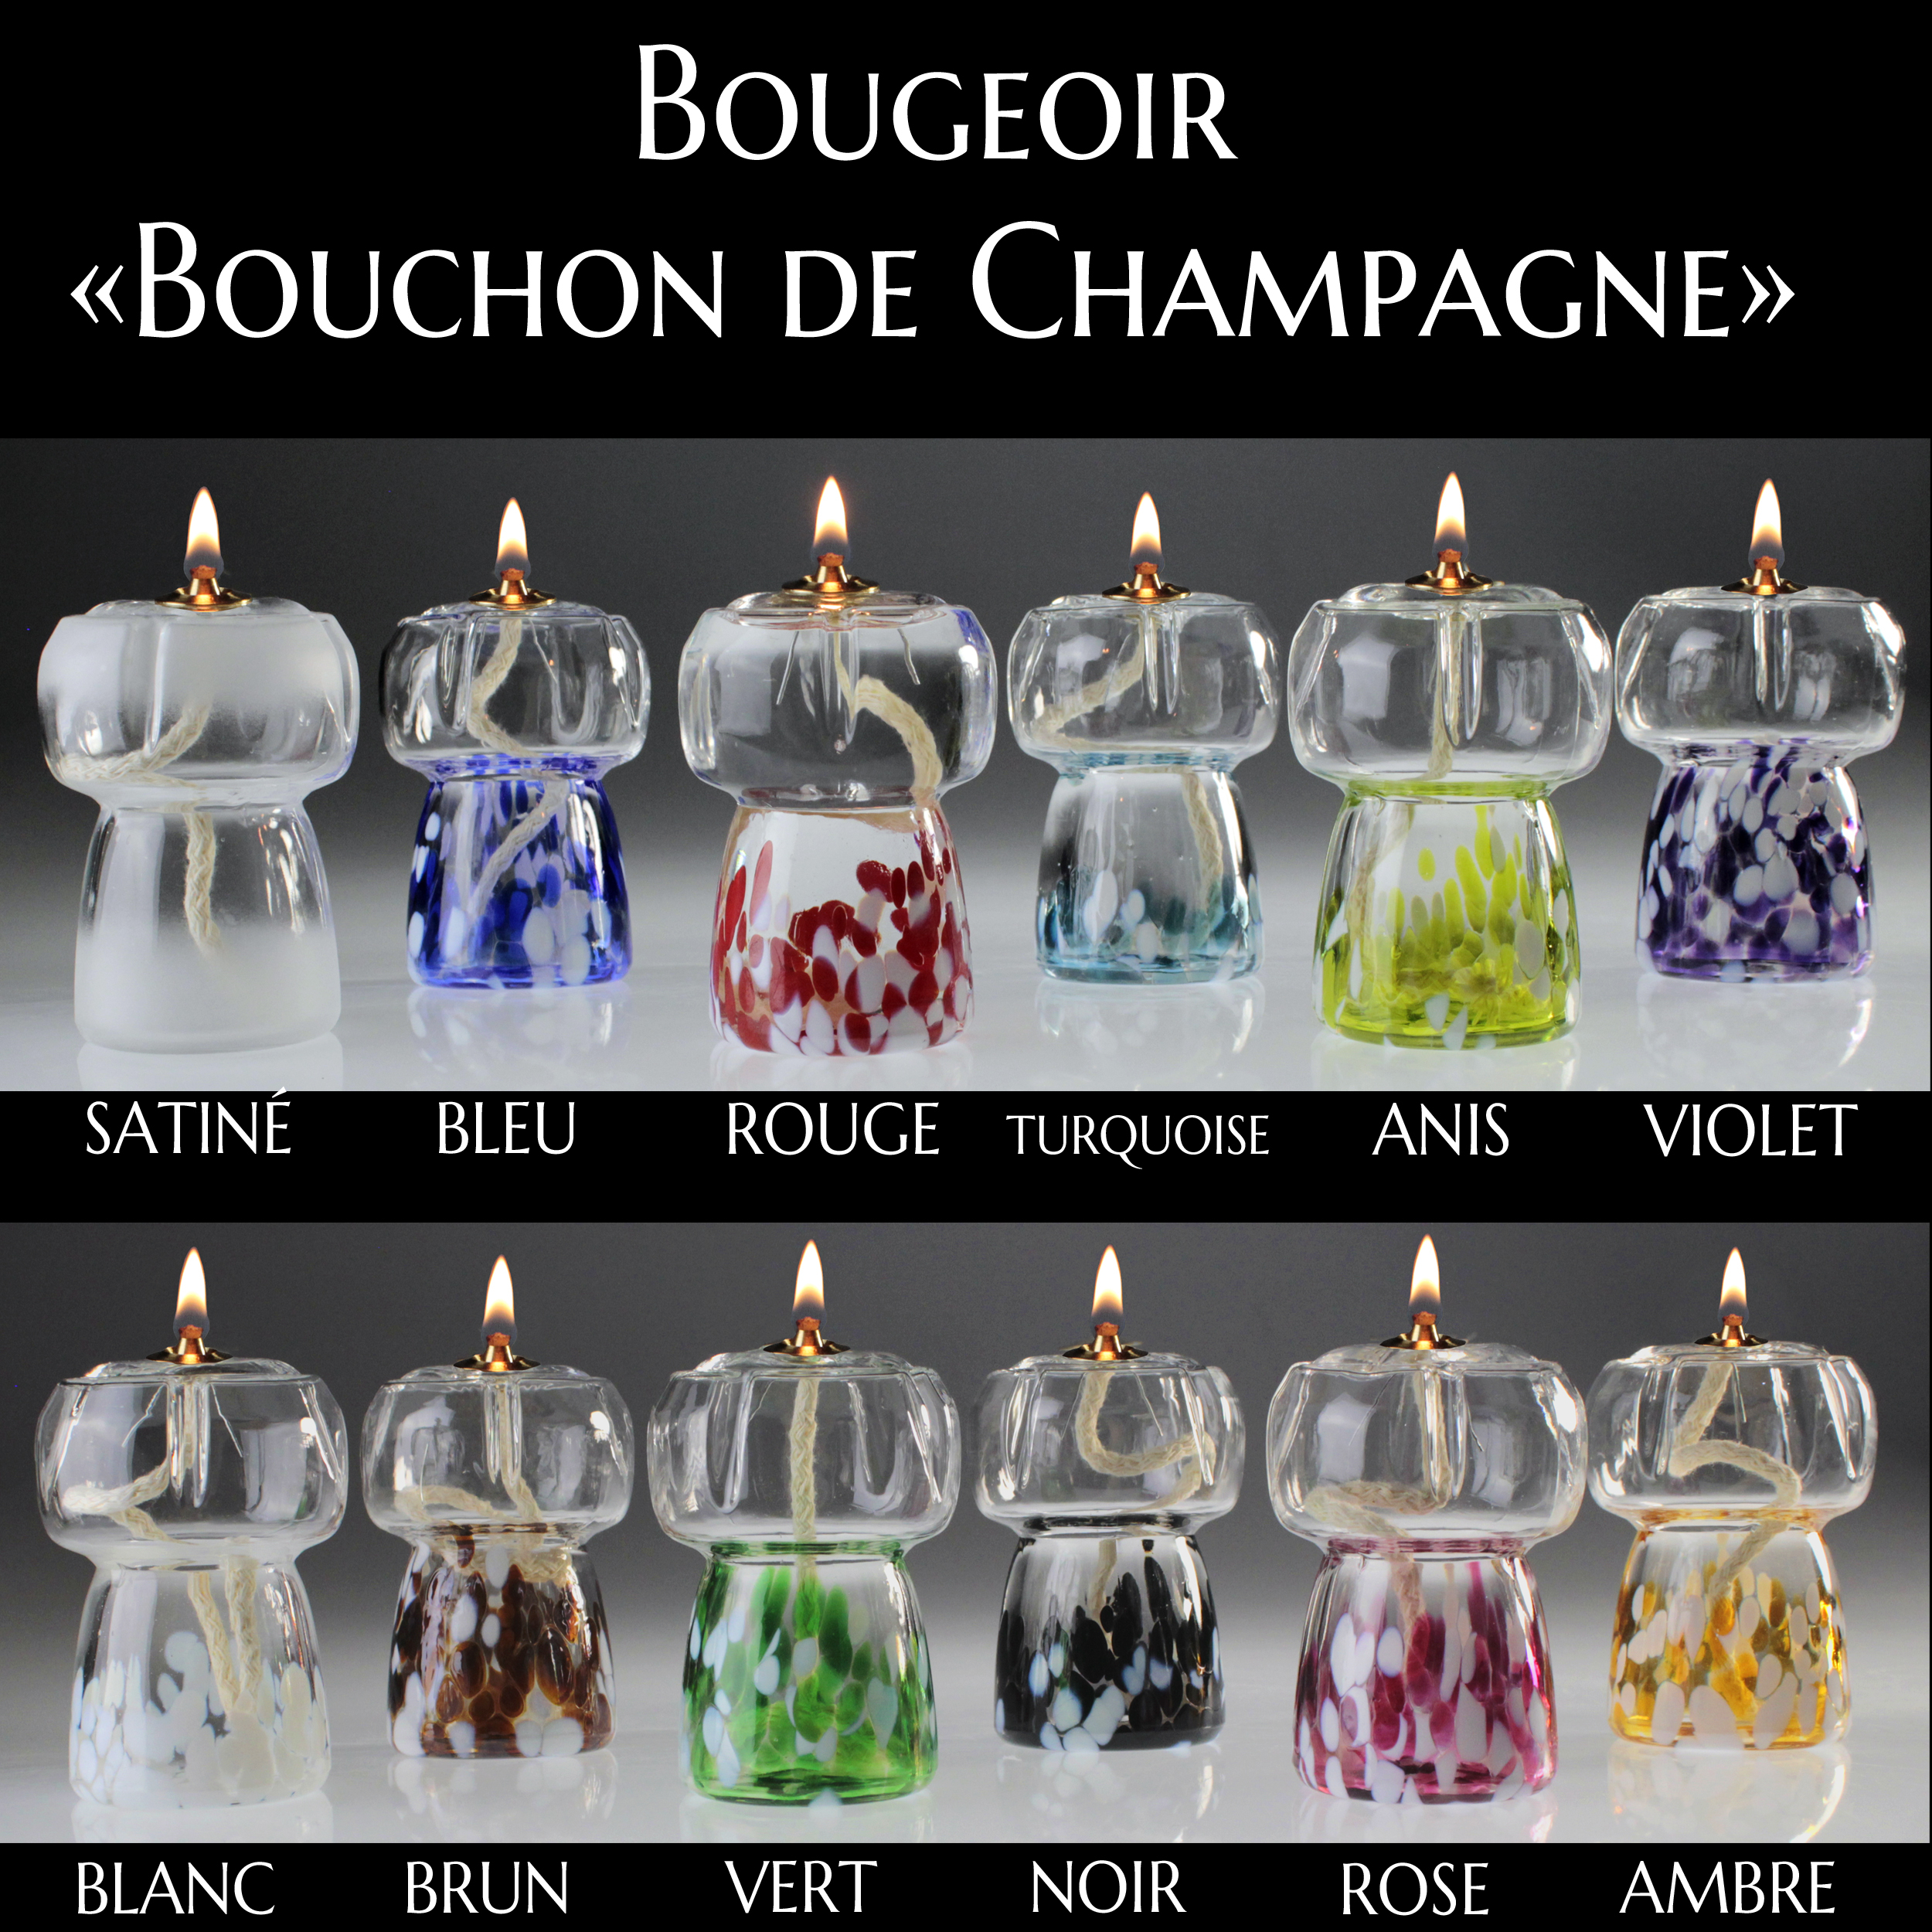 bougeoir_bonchon_champagne